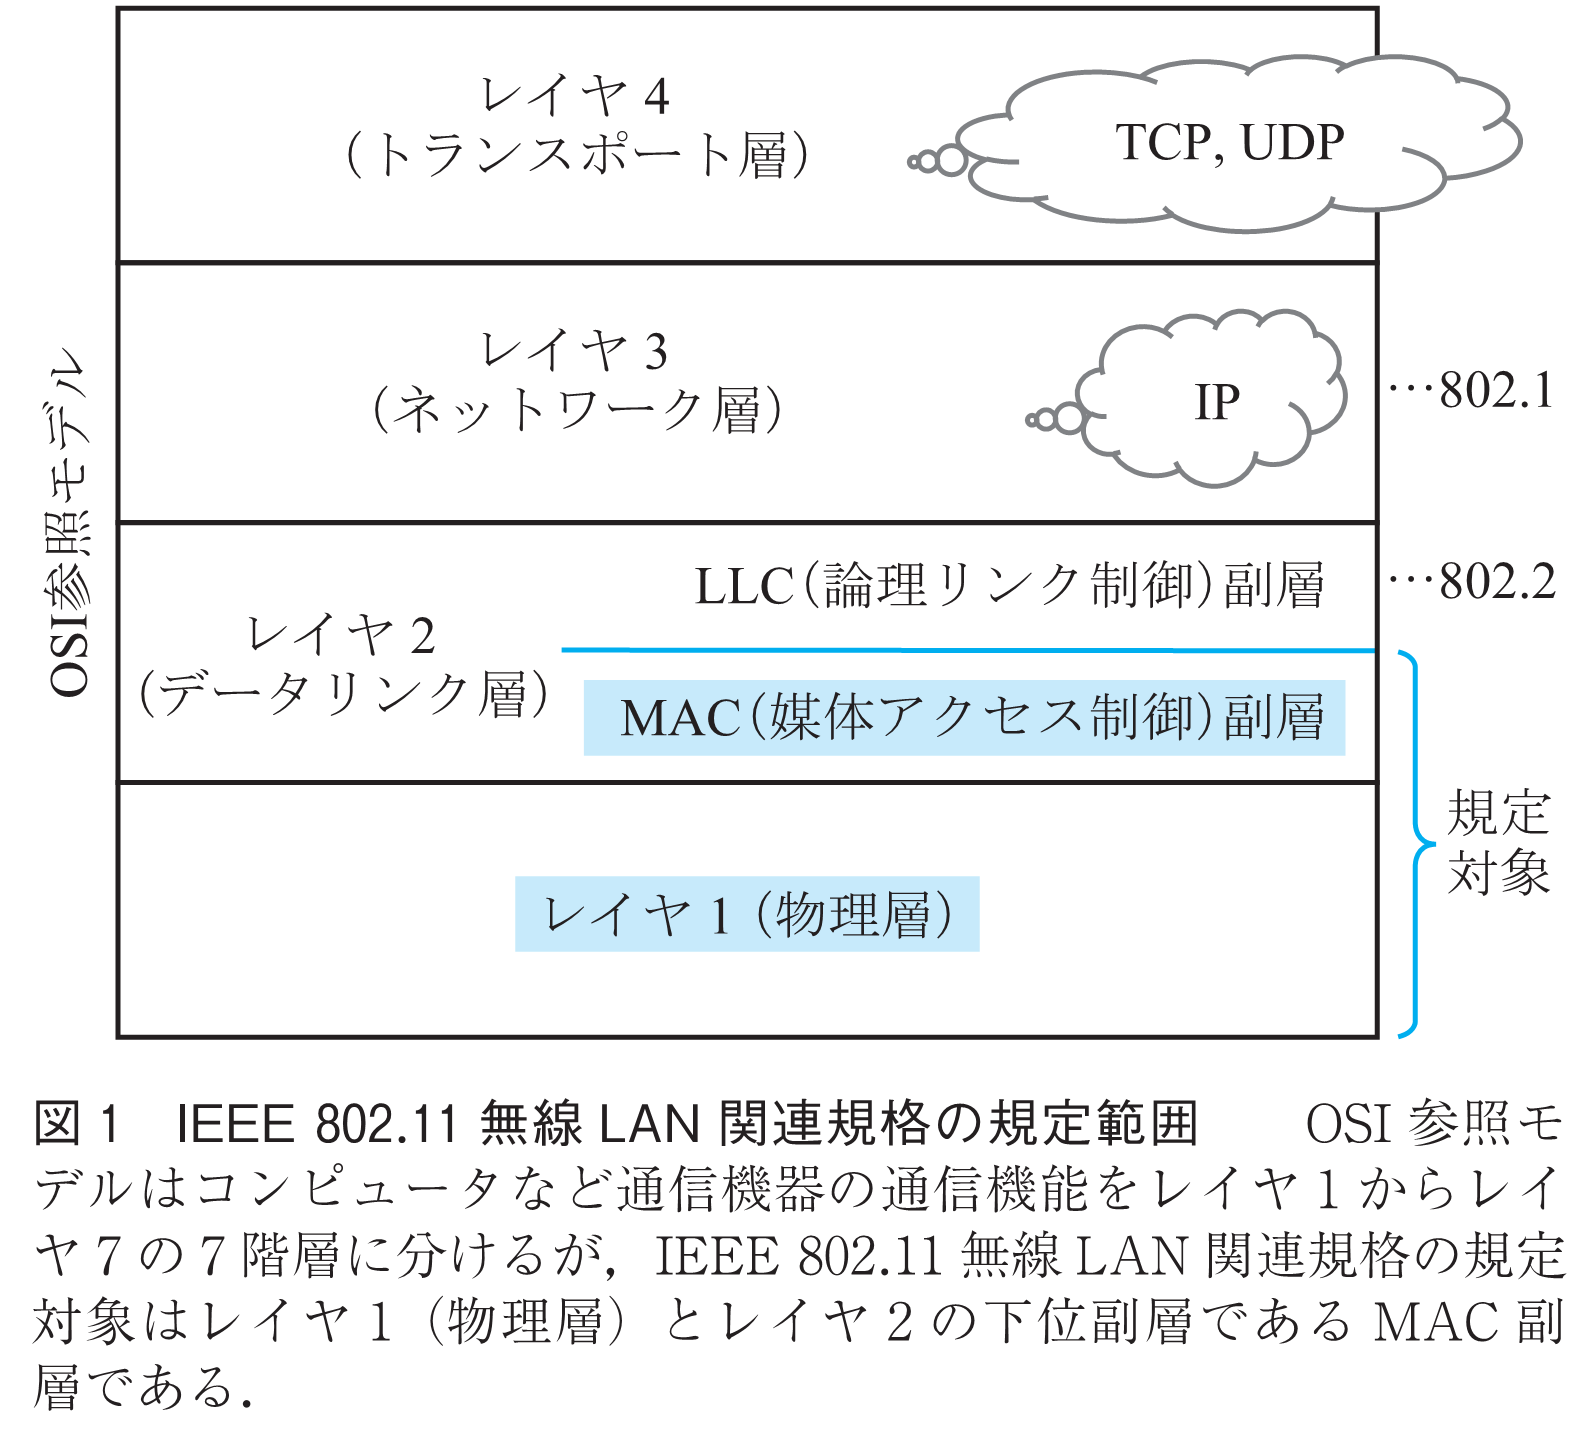 図1　IEEE 802.11無線LAN関連規格の規定範囲　　OSI参照モデルはコンピュータなど通信機器の通信機能をレイヤ1からレイヤ7の7階層に分けるが，IEEE 802.11無線LAN関連規格の規定対象はレイヤ1（物理層）とレイヤ2の下位副層であるMAC副層である．